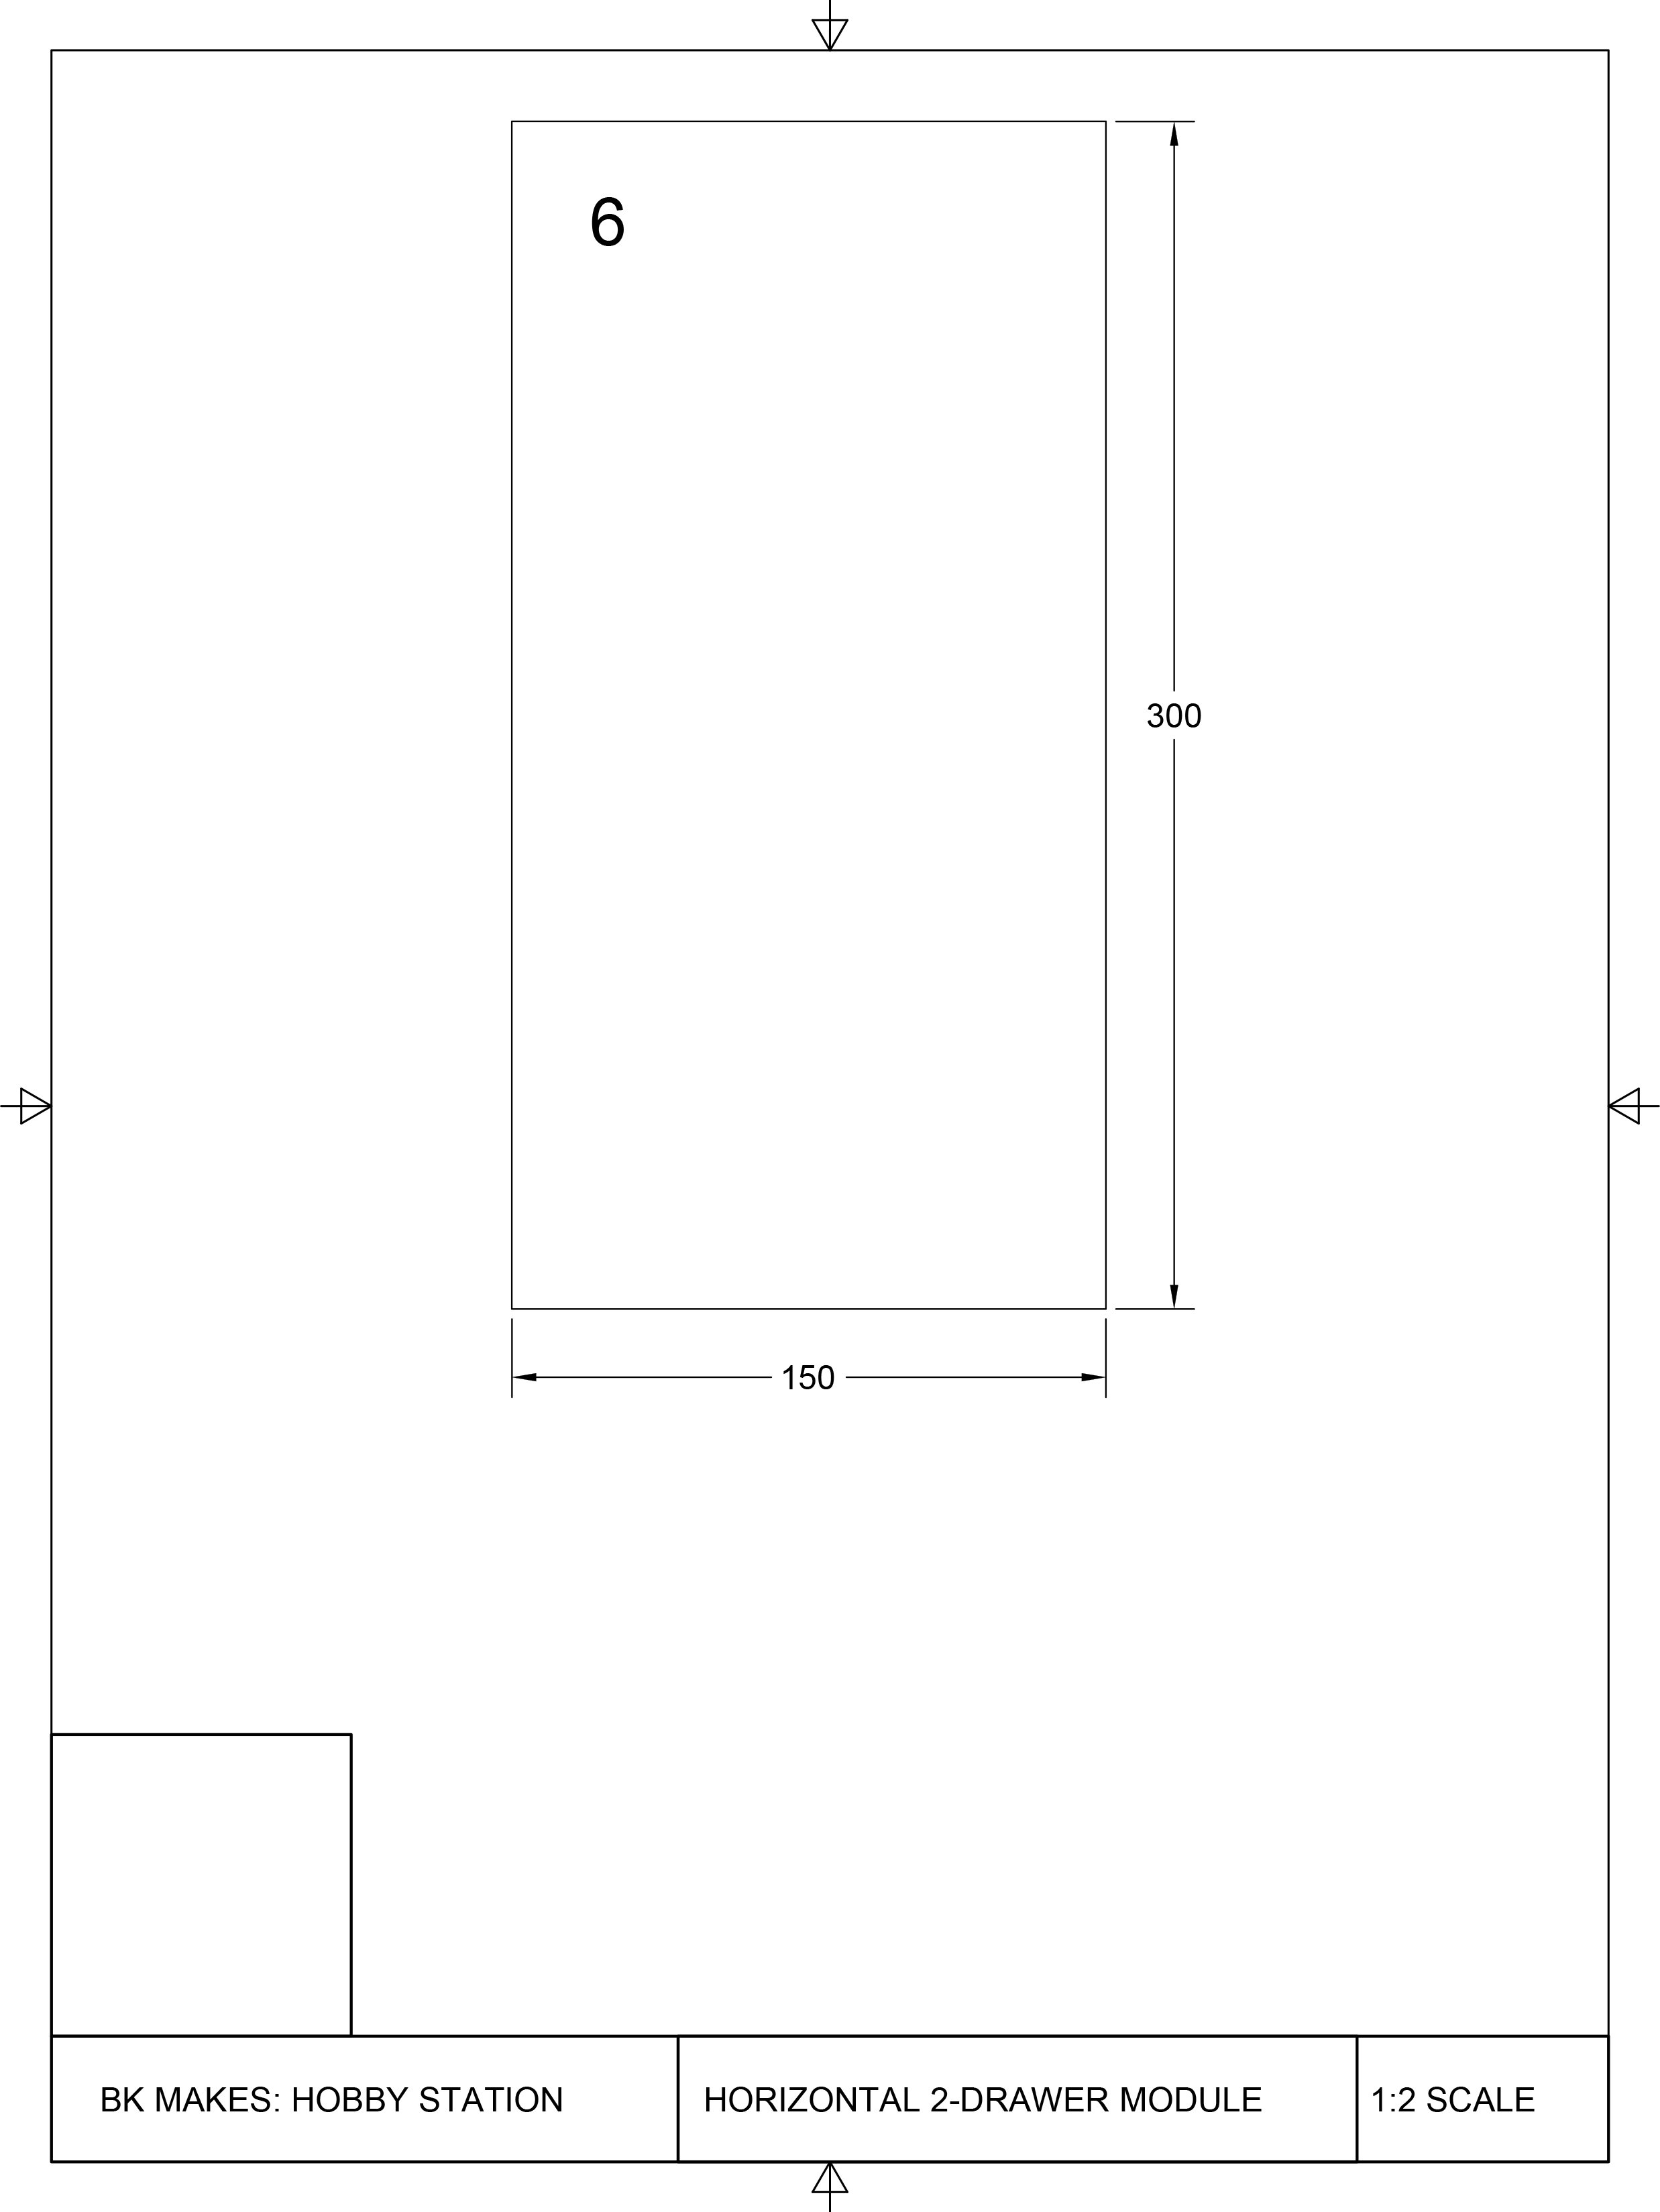 Horizontal 2-Drawer Module Templates-3.jpg